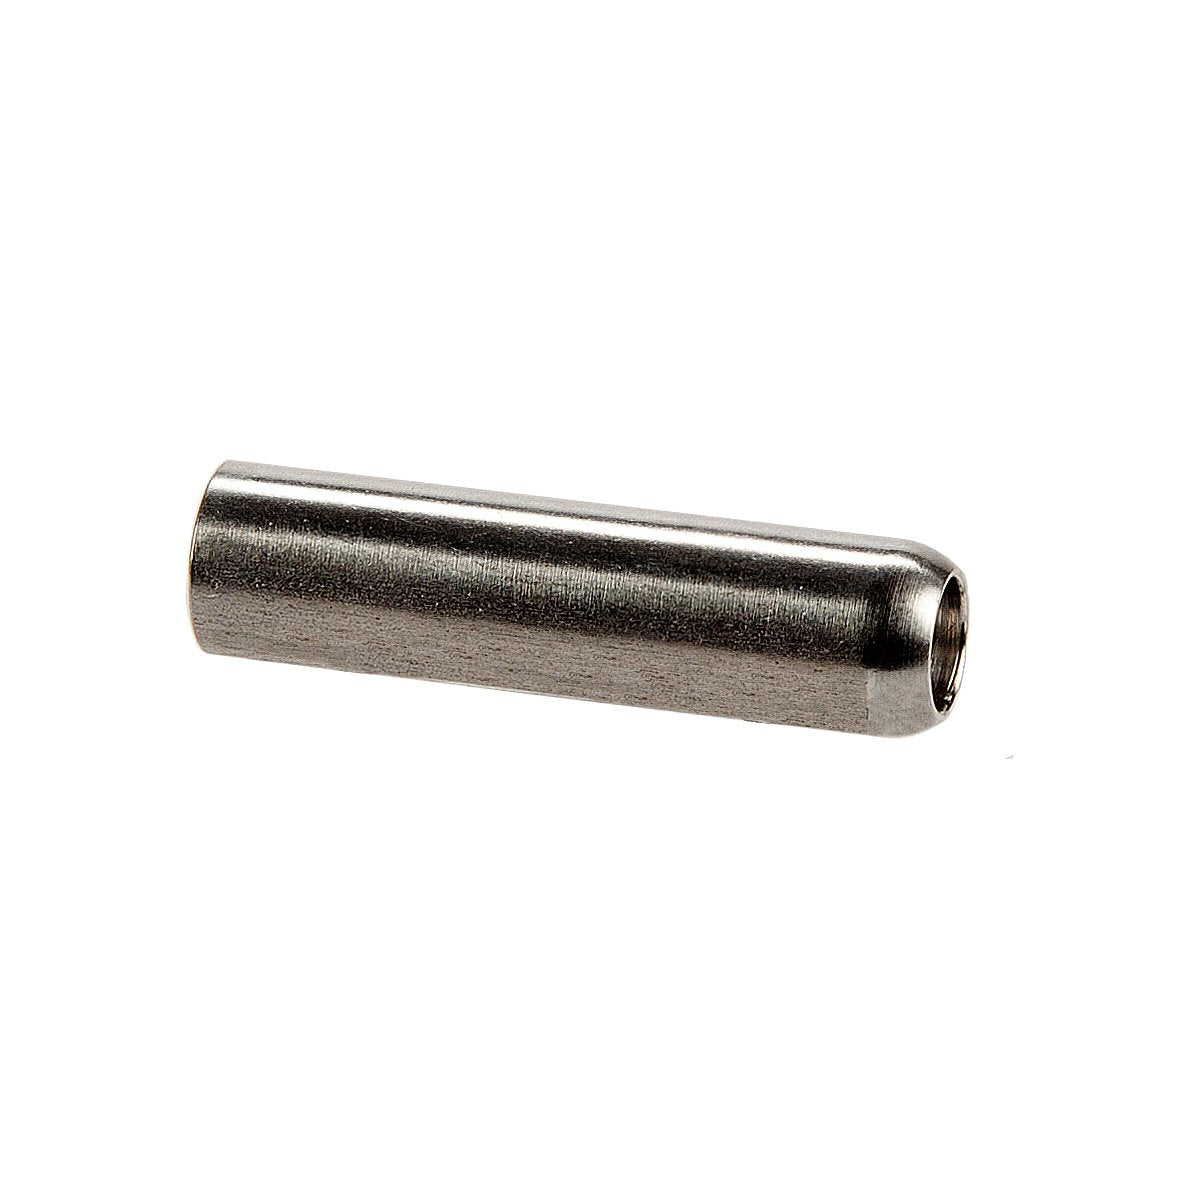 Dewey Large Aluminium Brush Adapter Converts 12-28 Thread to 8-32 Female Thread Aluminum